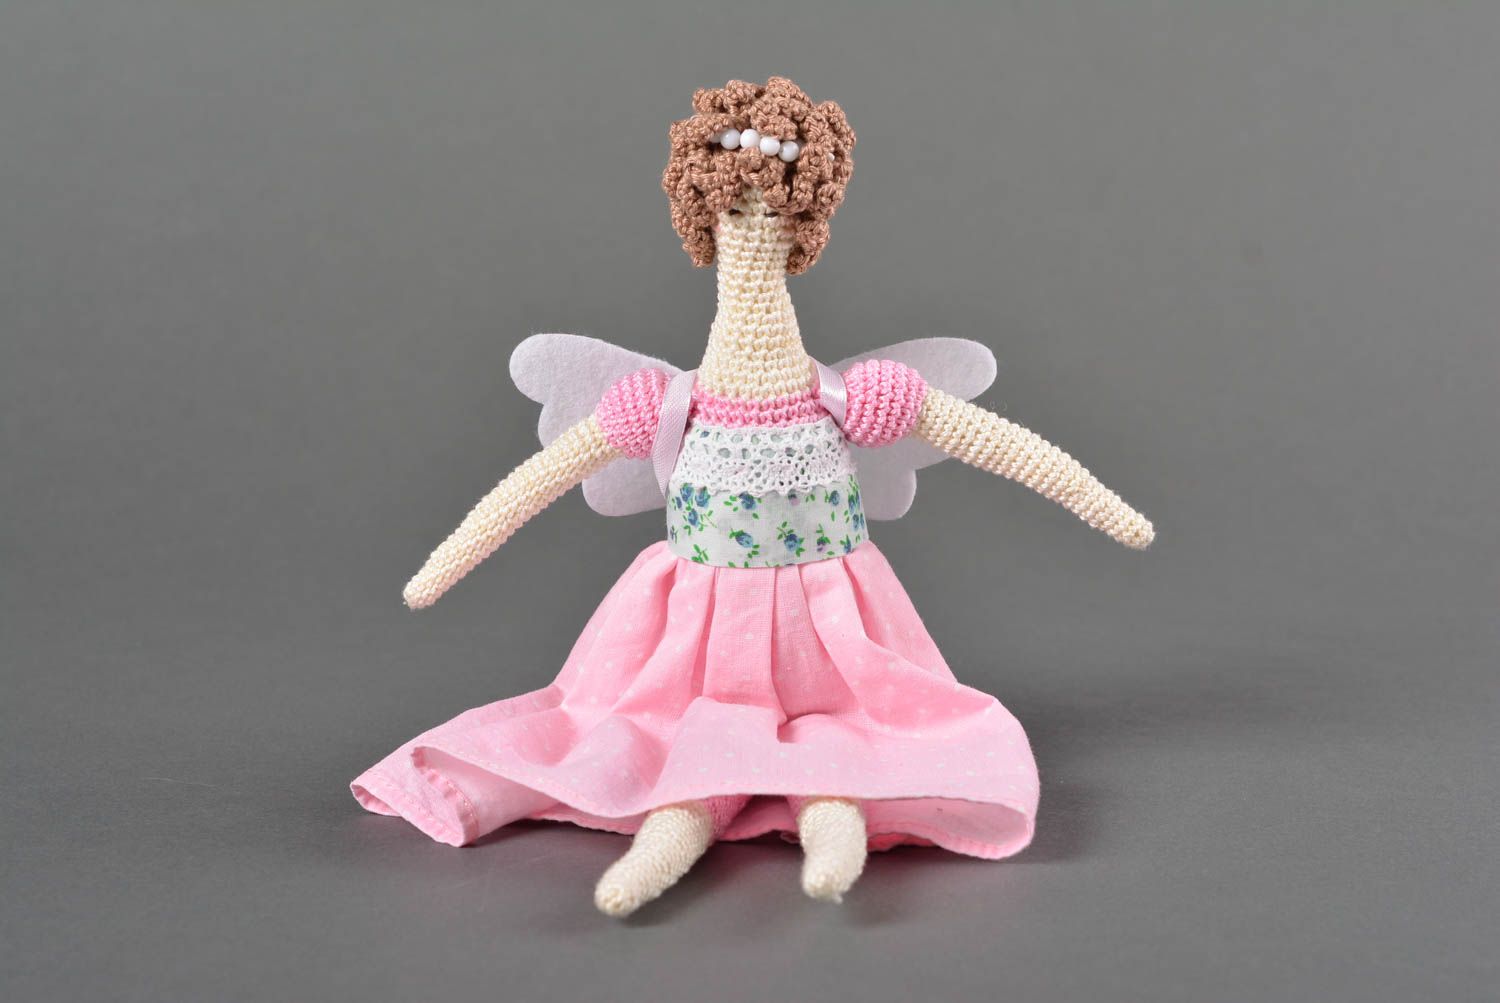 Handmade doll designer doll gift ideas home decor gift for girls soft toy photo 1